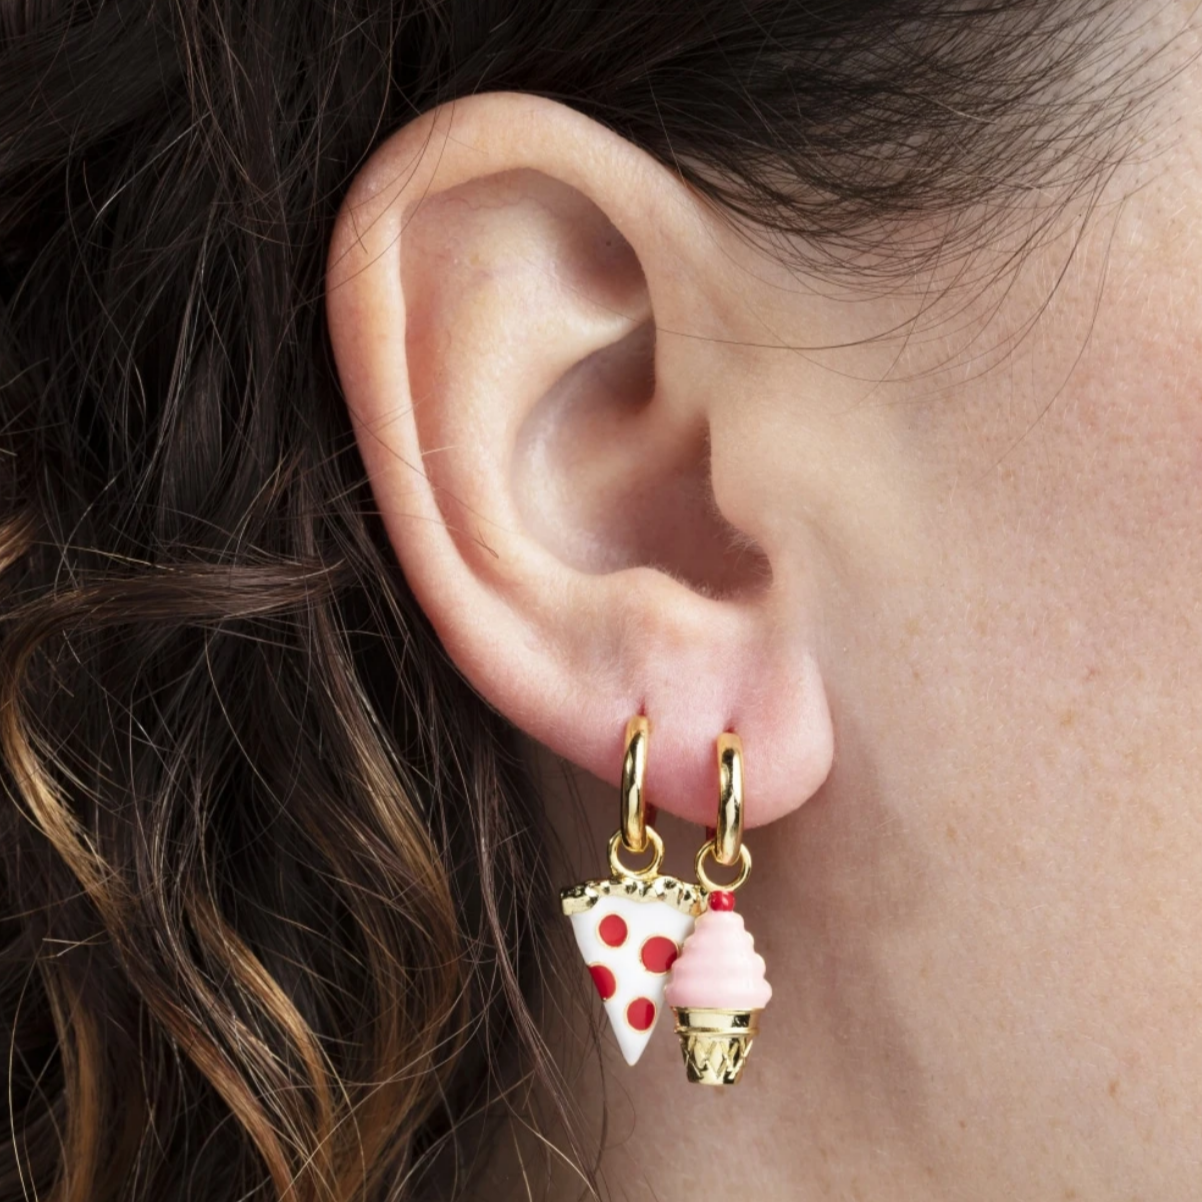 earrings on ear